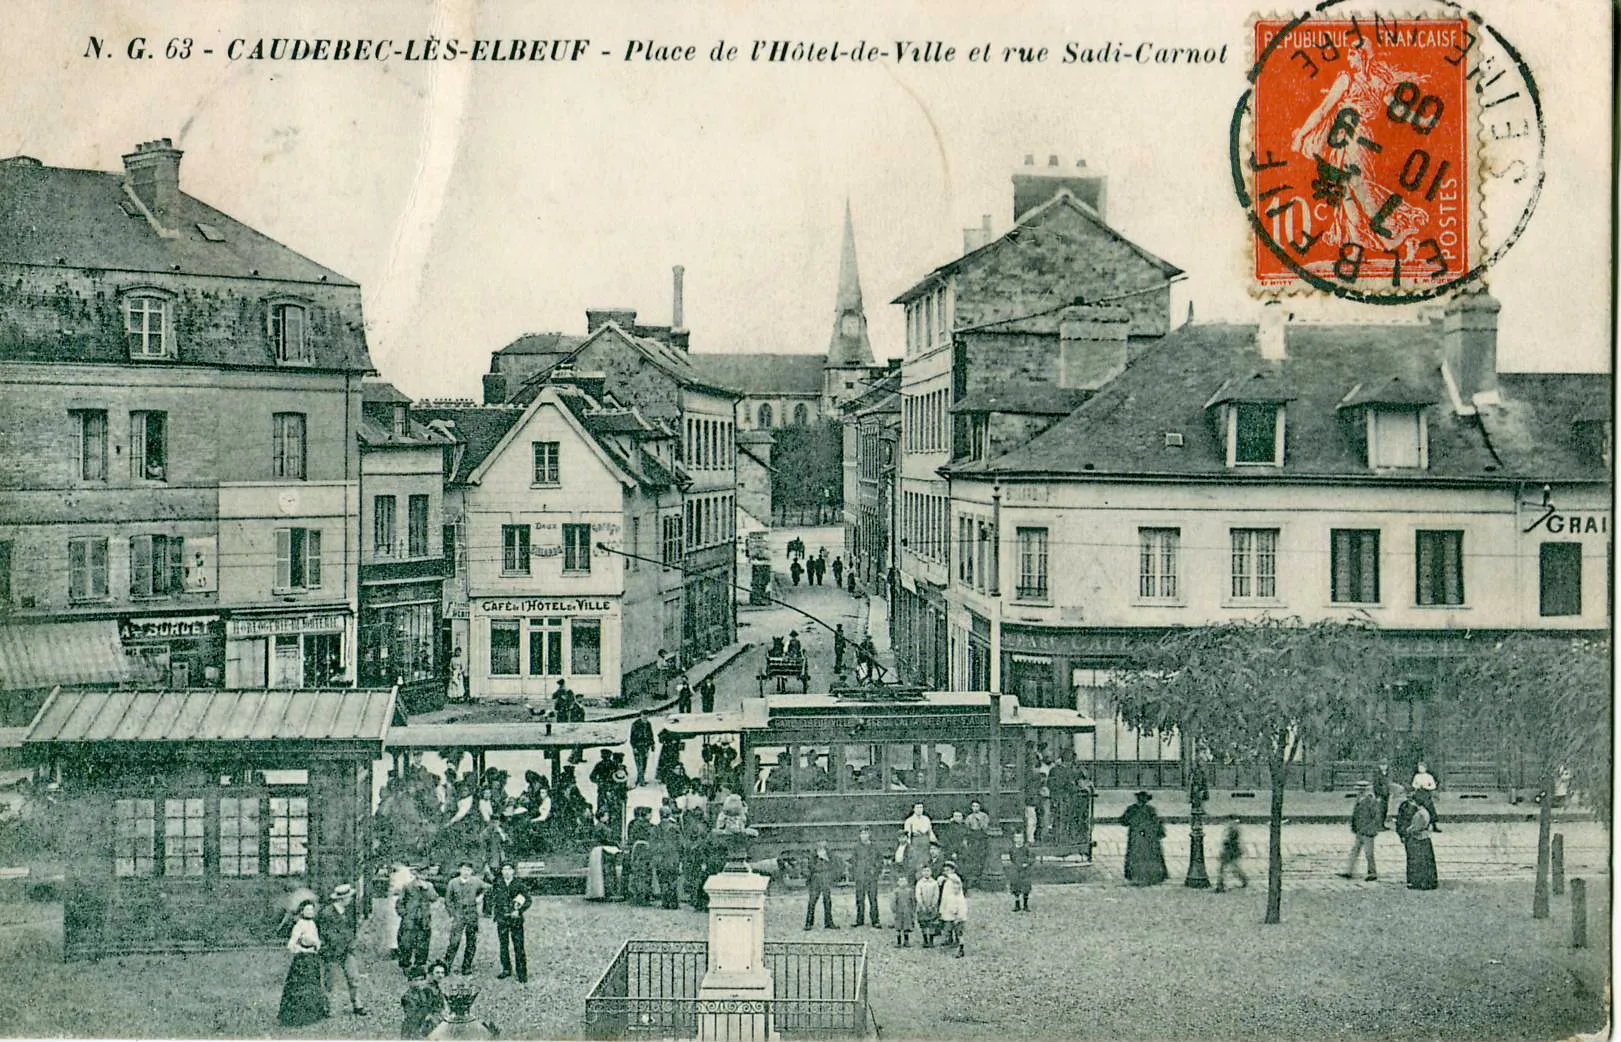 Image of Caudebec-lès-Elbeuf